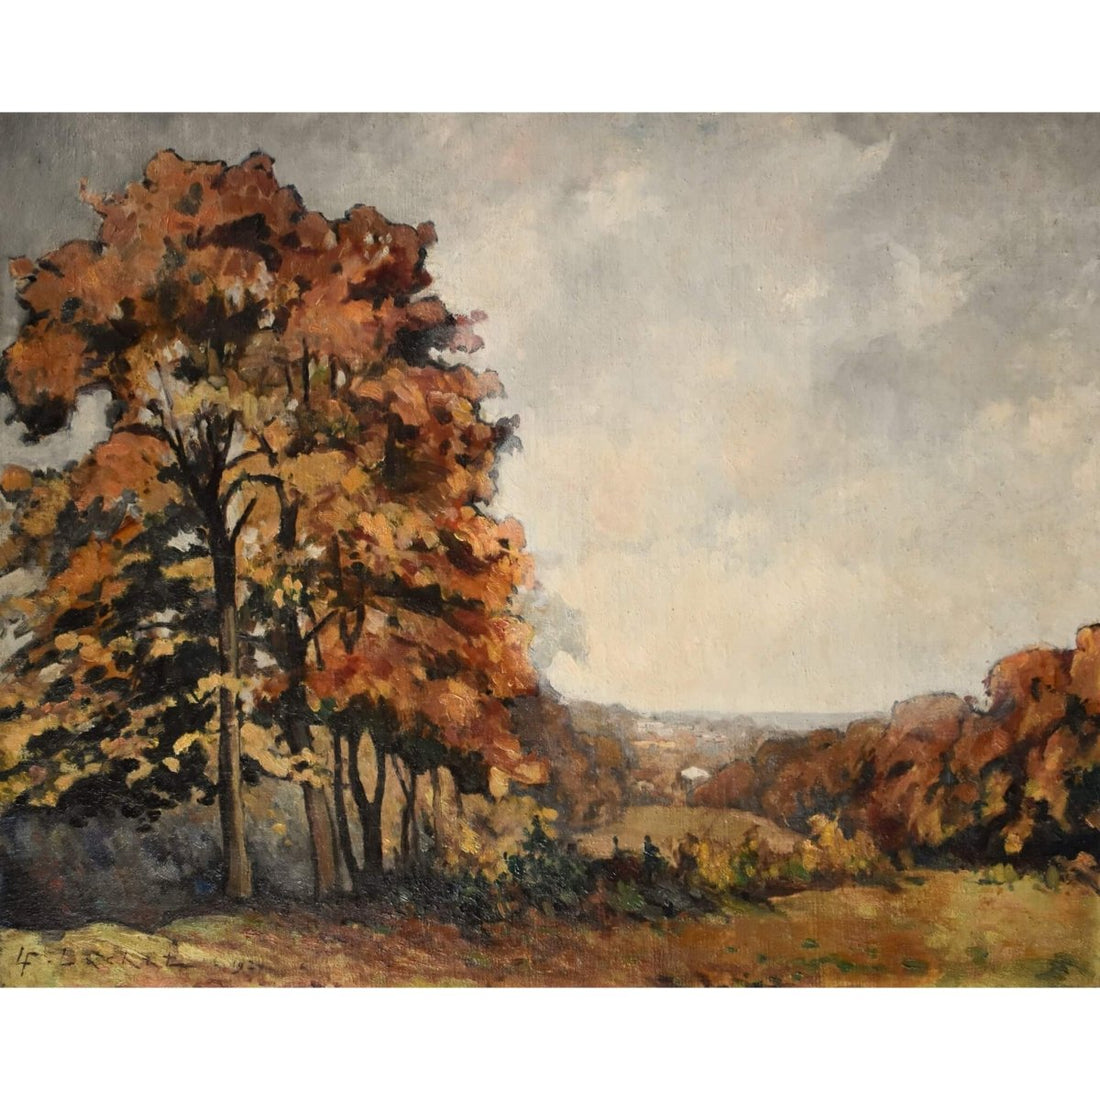 Louis Lachat – Autumn Landscape - Winckelmann Gallery